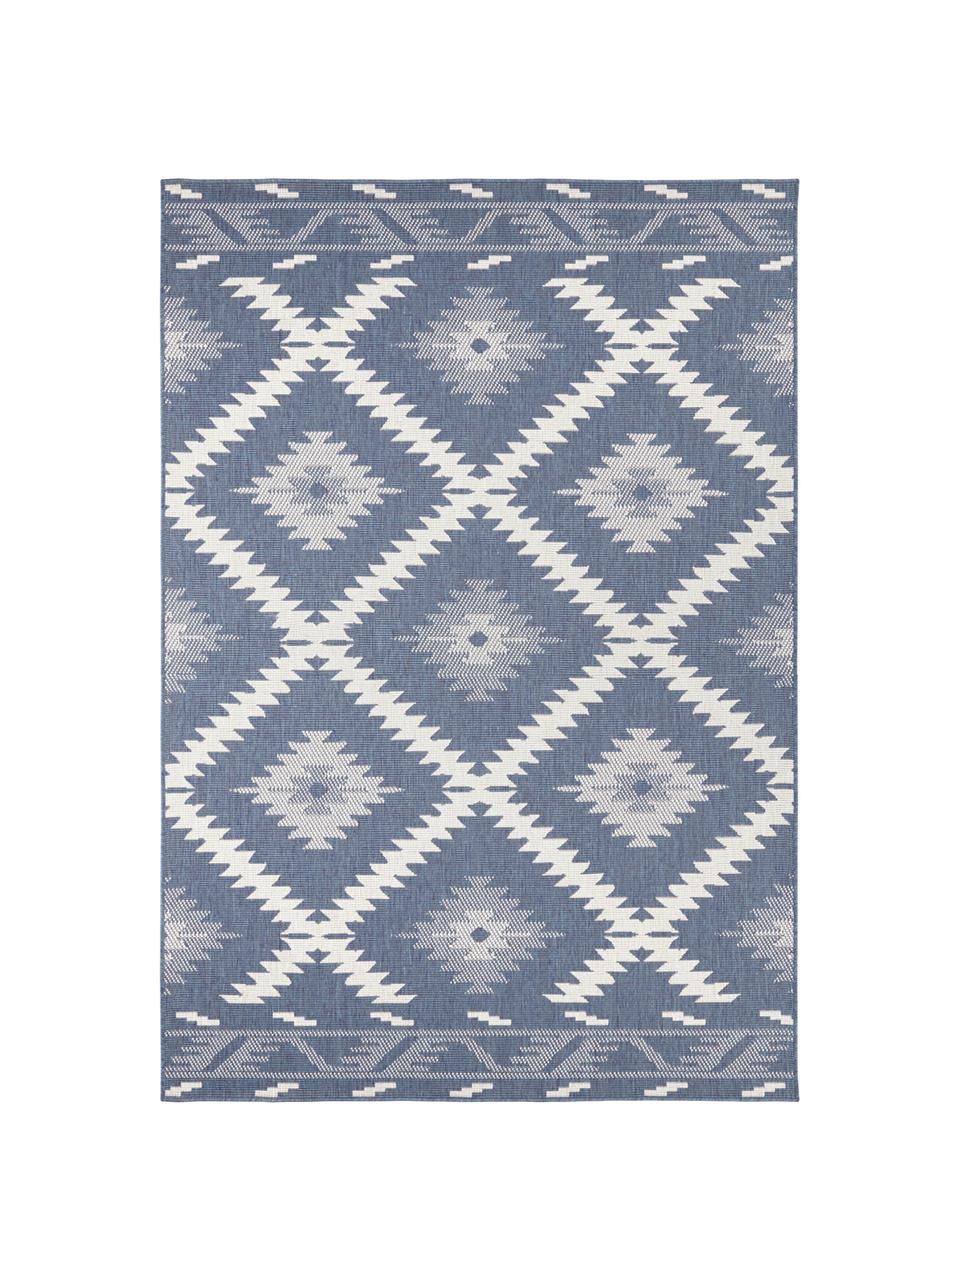 Oboustranný vnitřní a venkovní koberec Malibu, Modrá, krémová